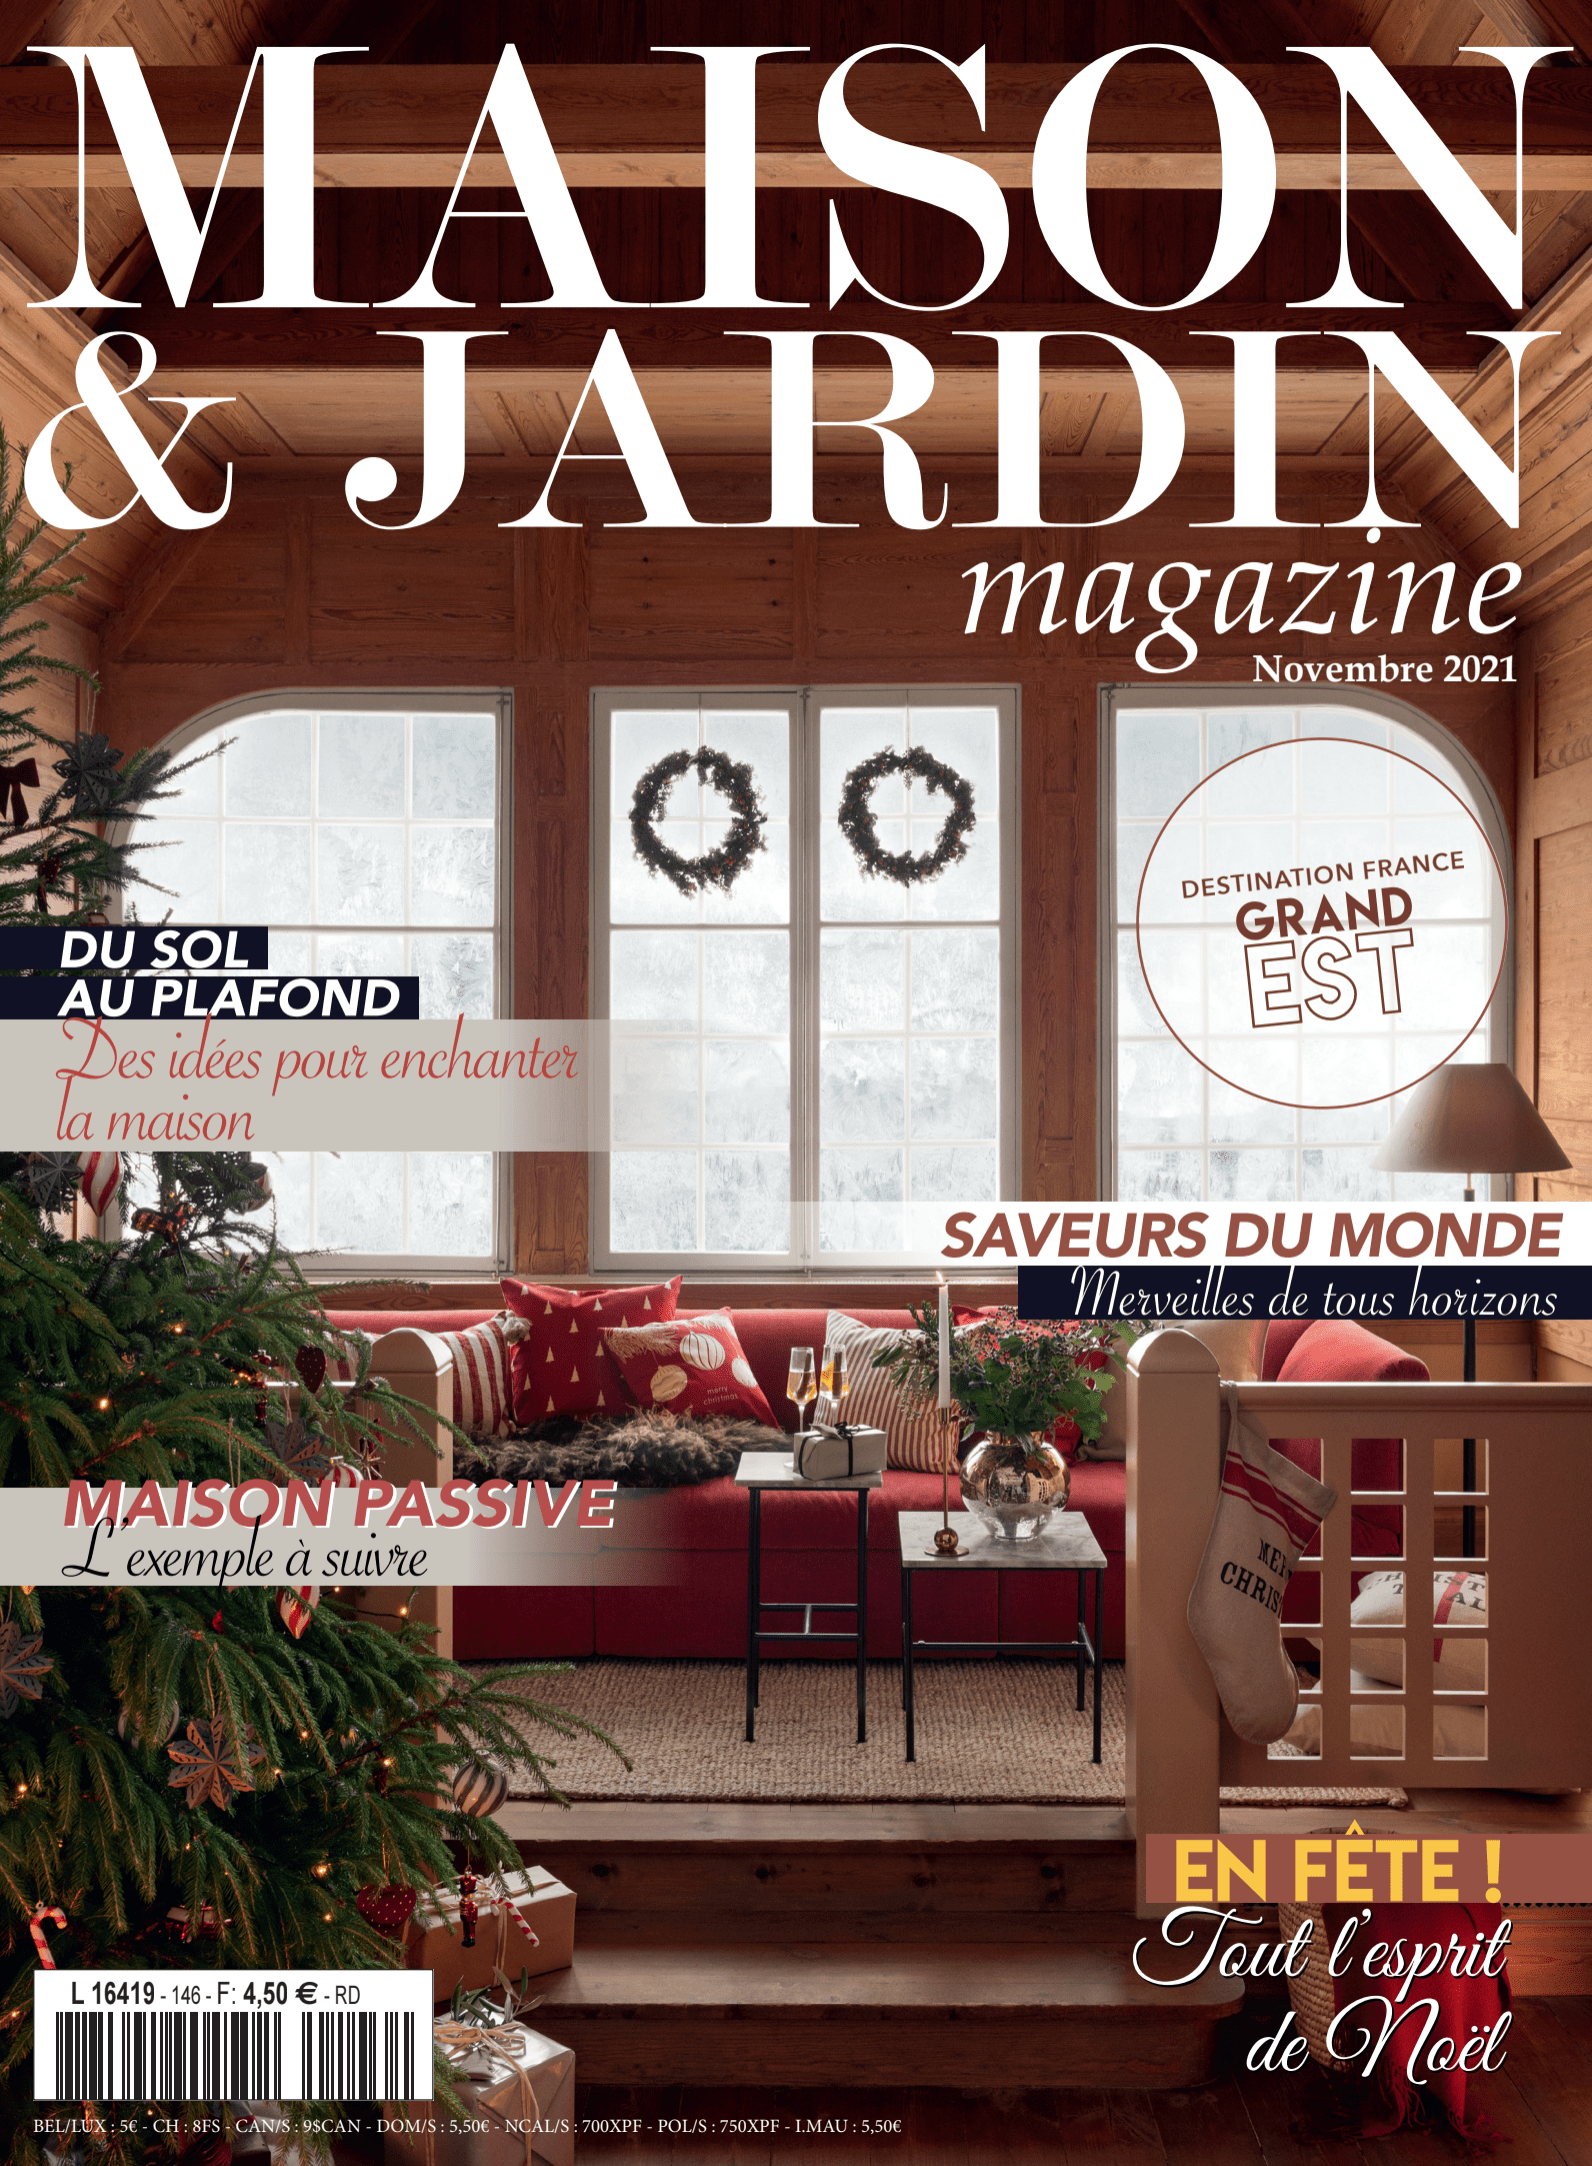 Altobuy sur Maison & Jardin magazine Novembre 2021